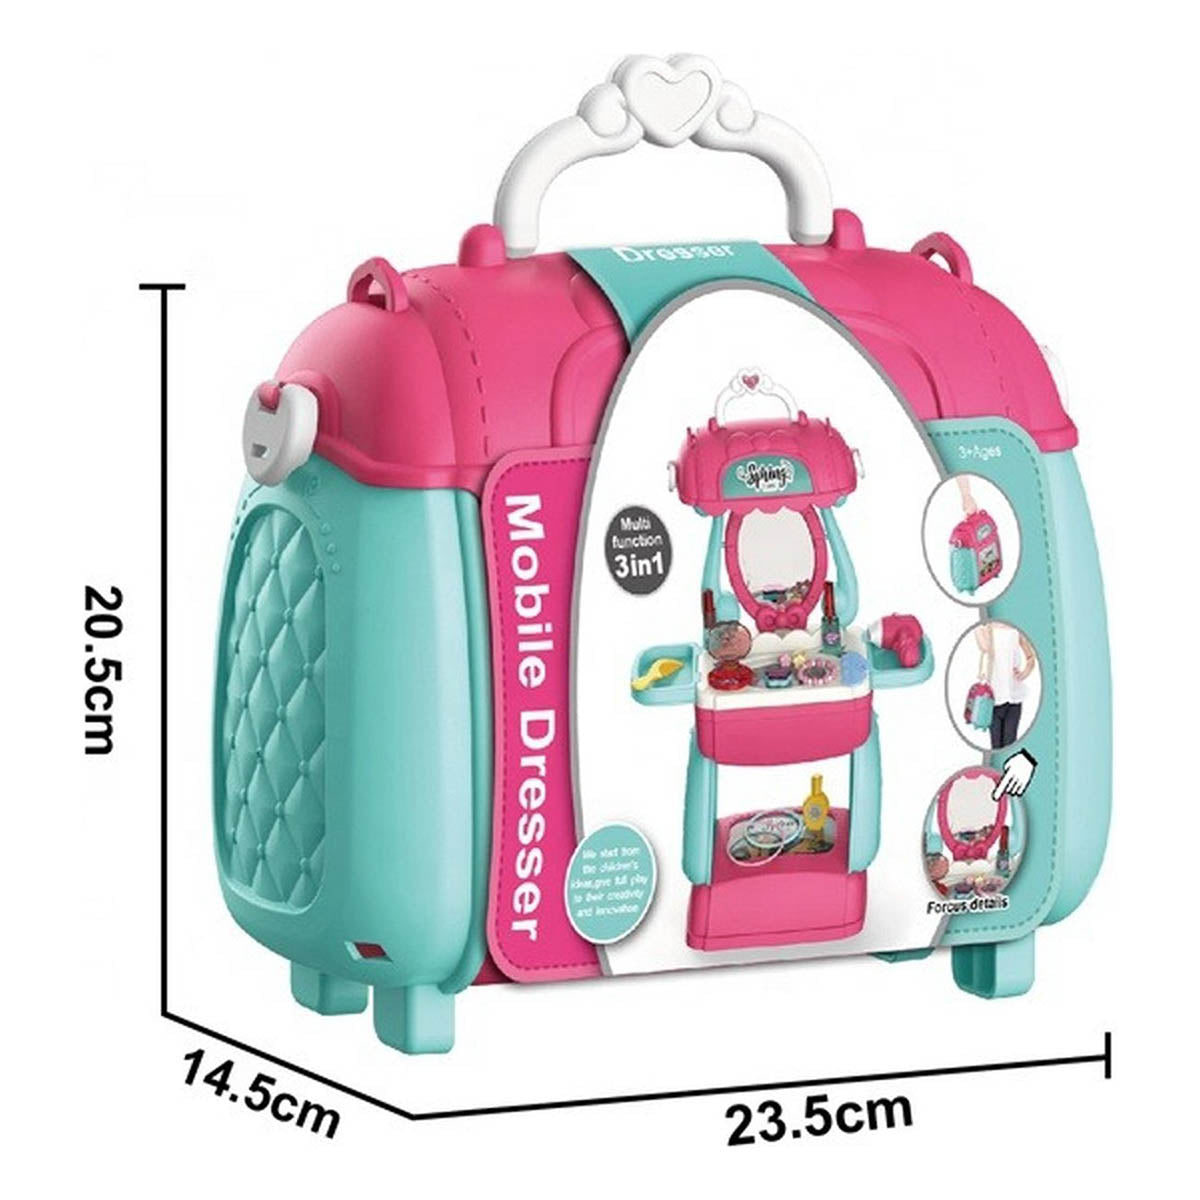 Ariko Spielzeugkoffer Kosmetiksalon 31 Teile - Föhn, Spiegel, Schminke, Parfüm und vieles mehr - praktischer Koffer zum Mitnehmen